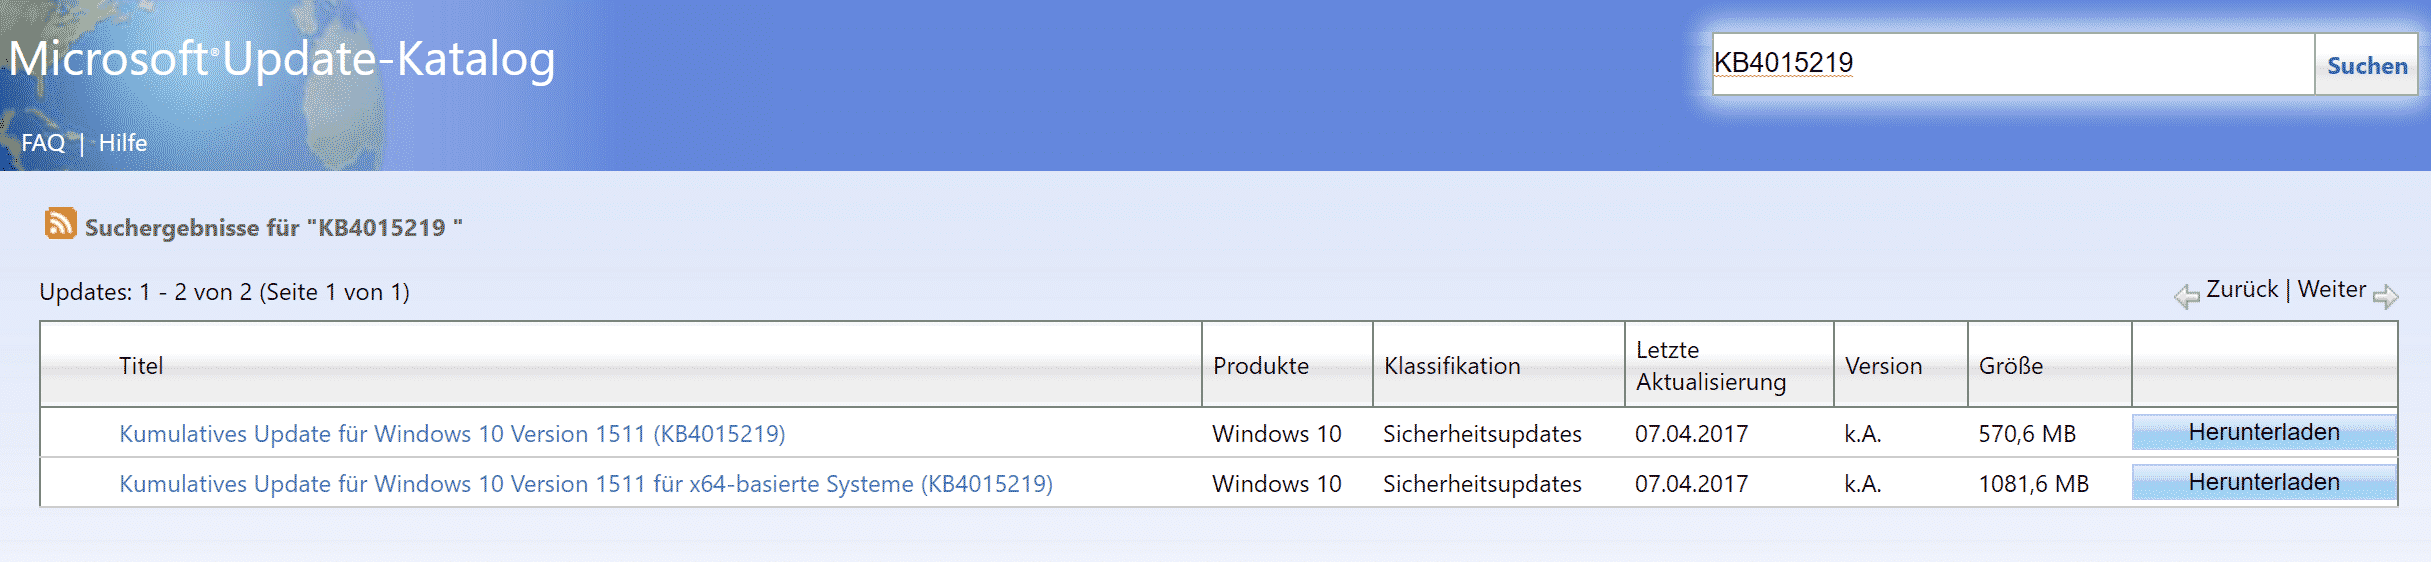 KB4015219 Update für Windows 10 Version 1511 Build 10586.873